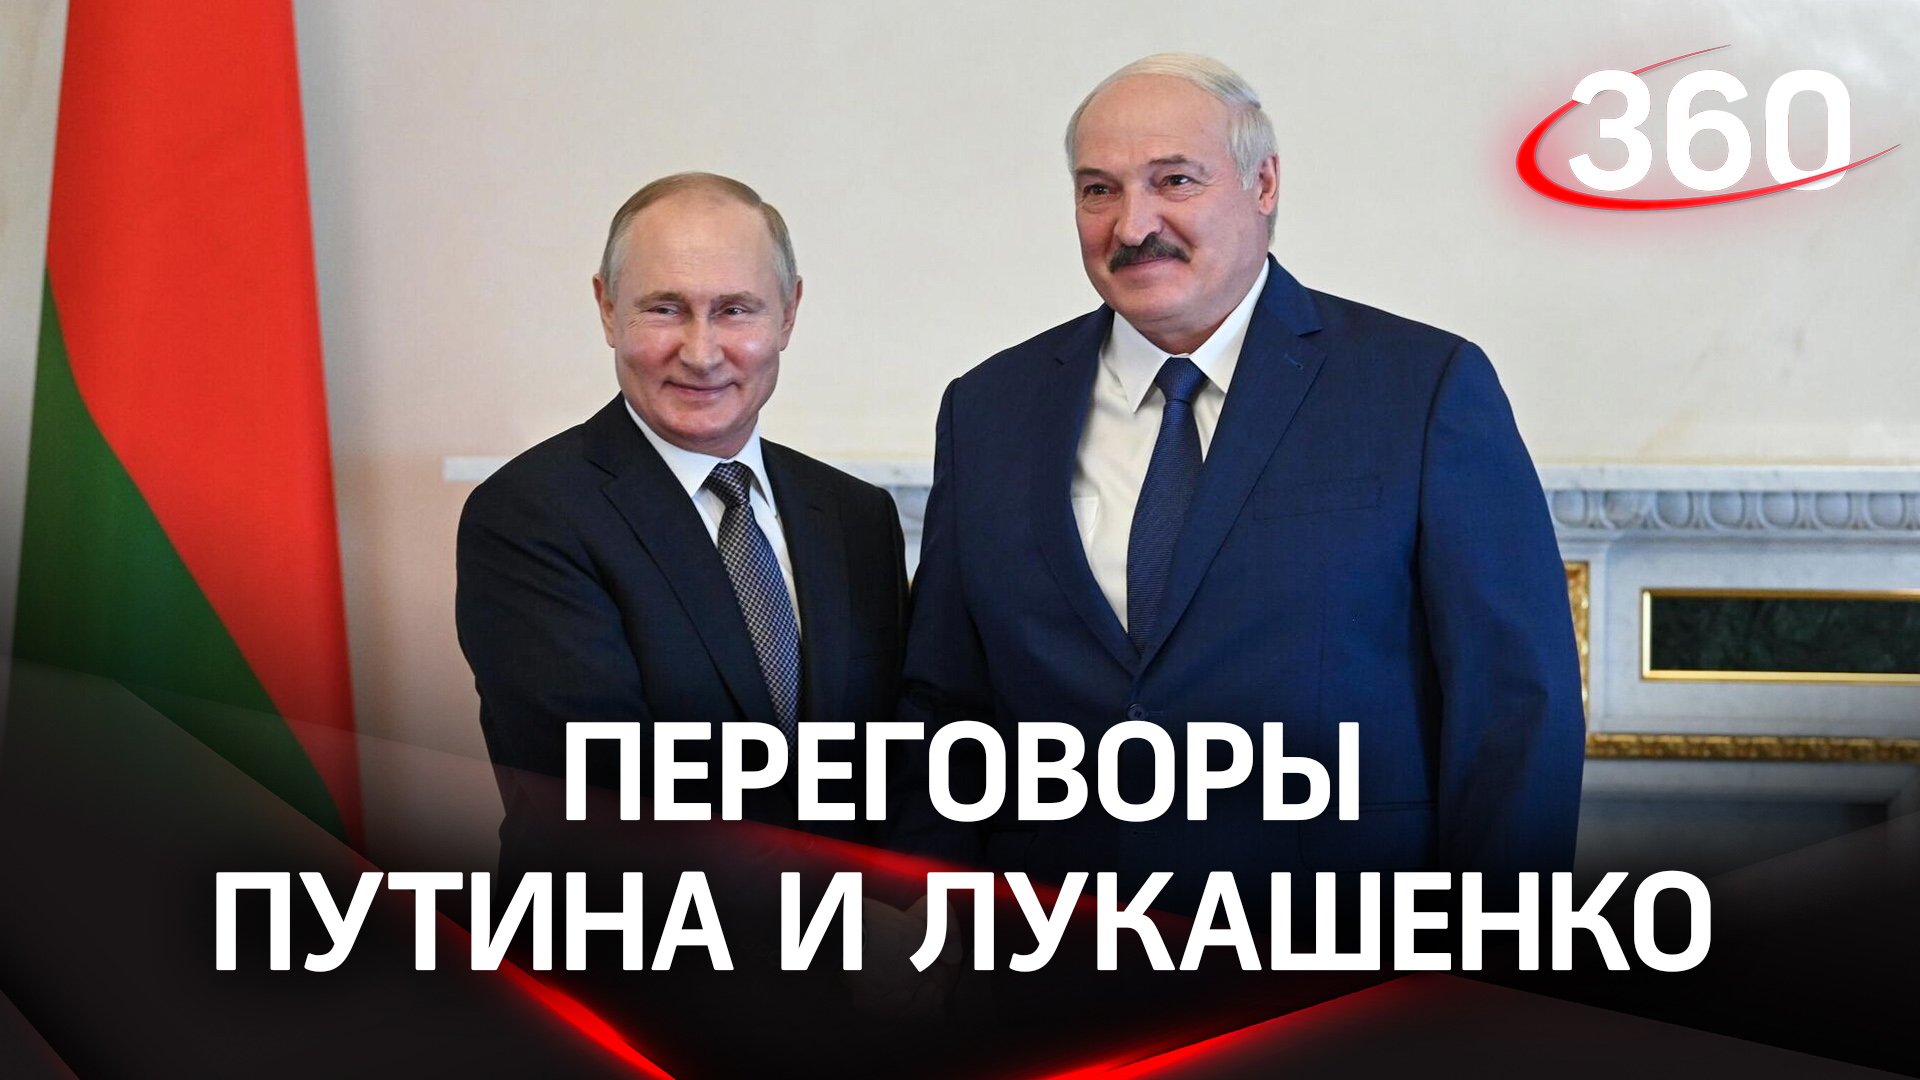 Лидеры России и Белоруссии провели переговоры